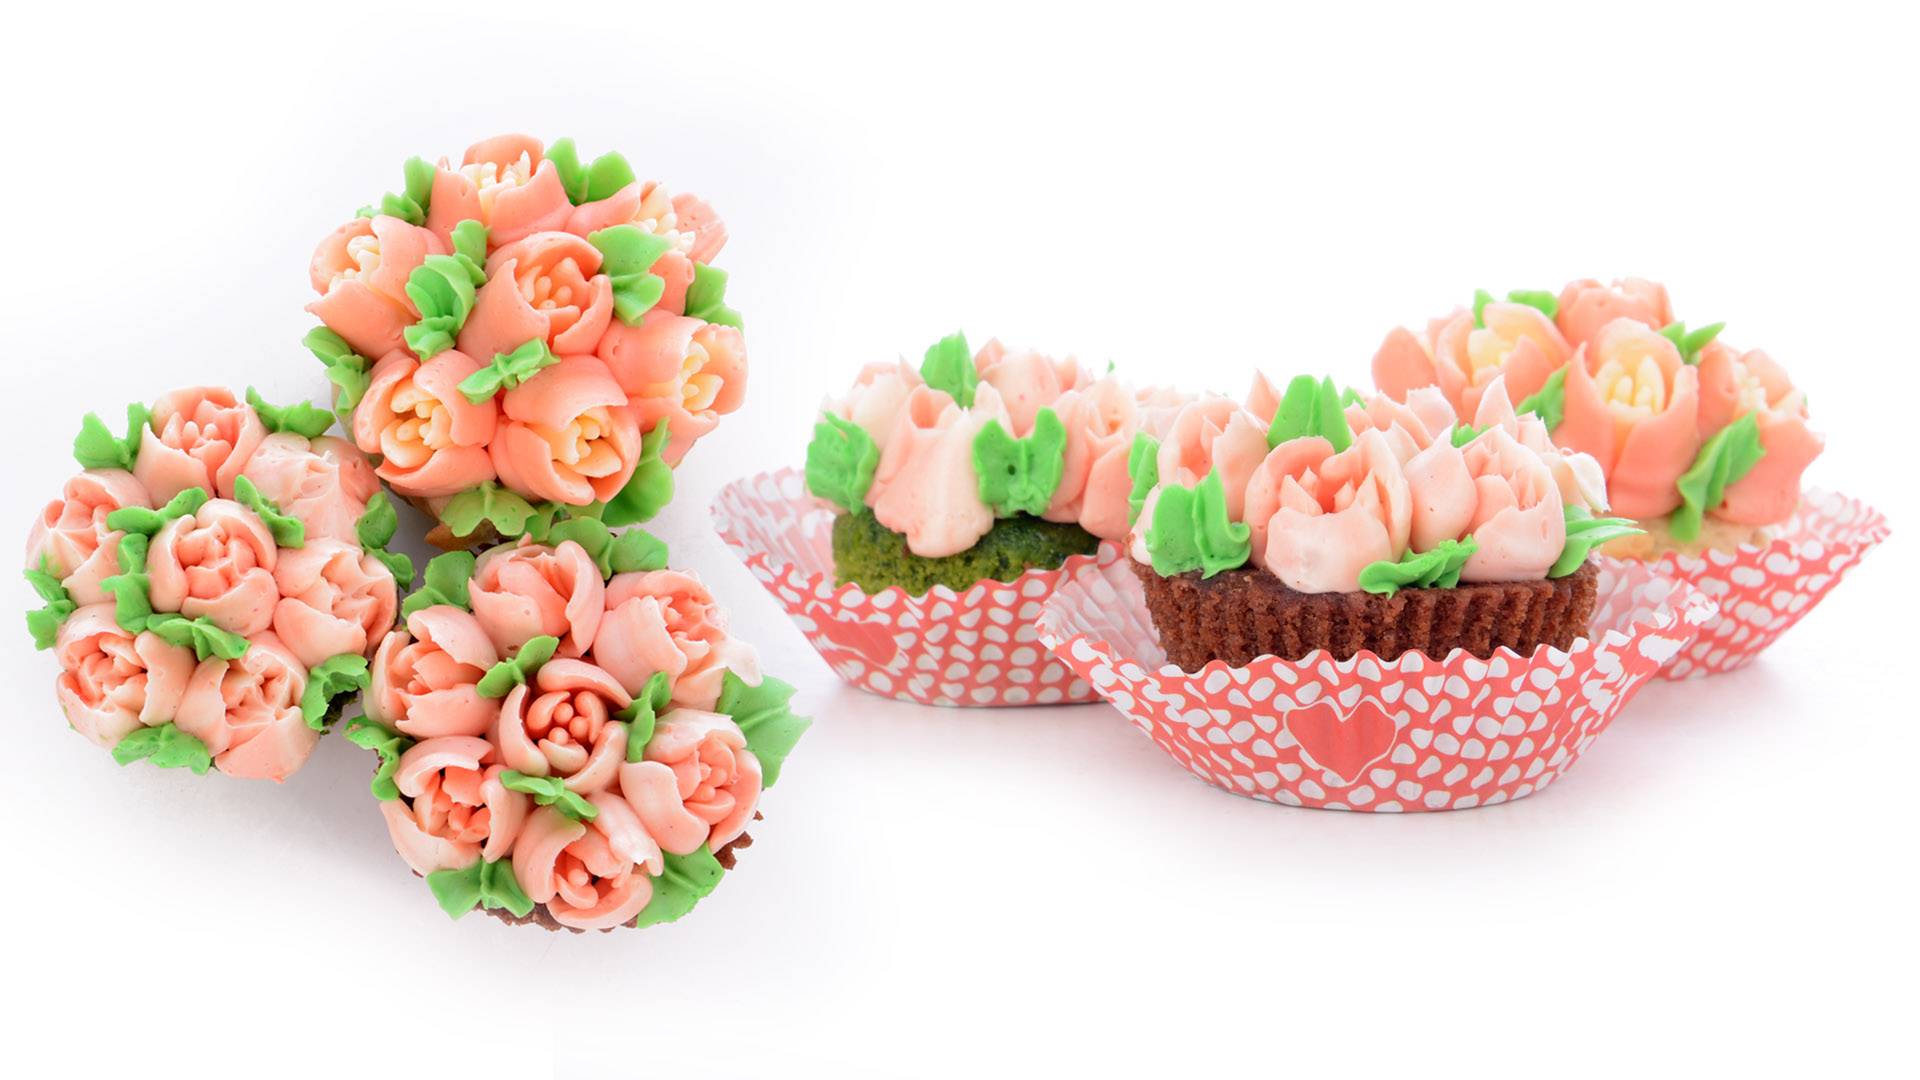 Valentýnské cupcakes